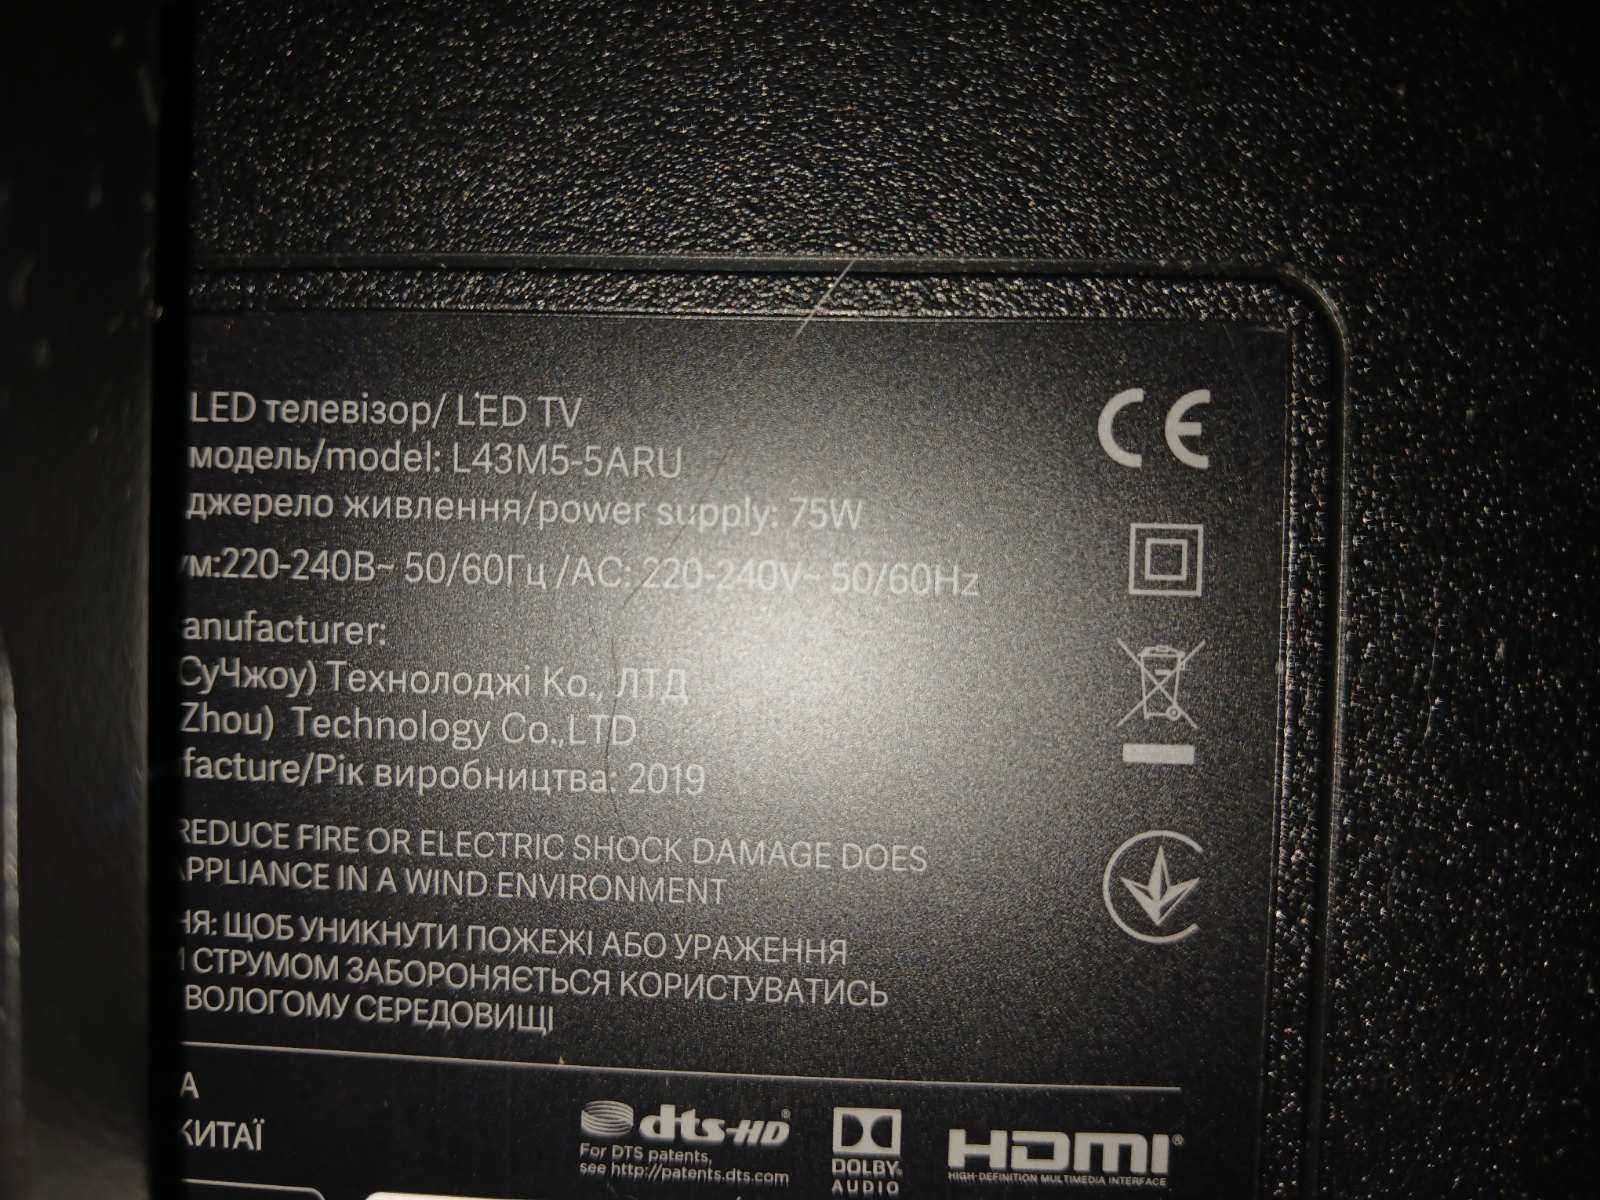 Телевизор Xiaomi LED TV, модель L43M5-5ARU, 75W, 2019 р НА ЗАПЧАСТИНИ